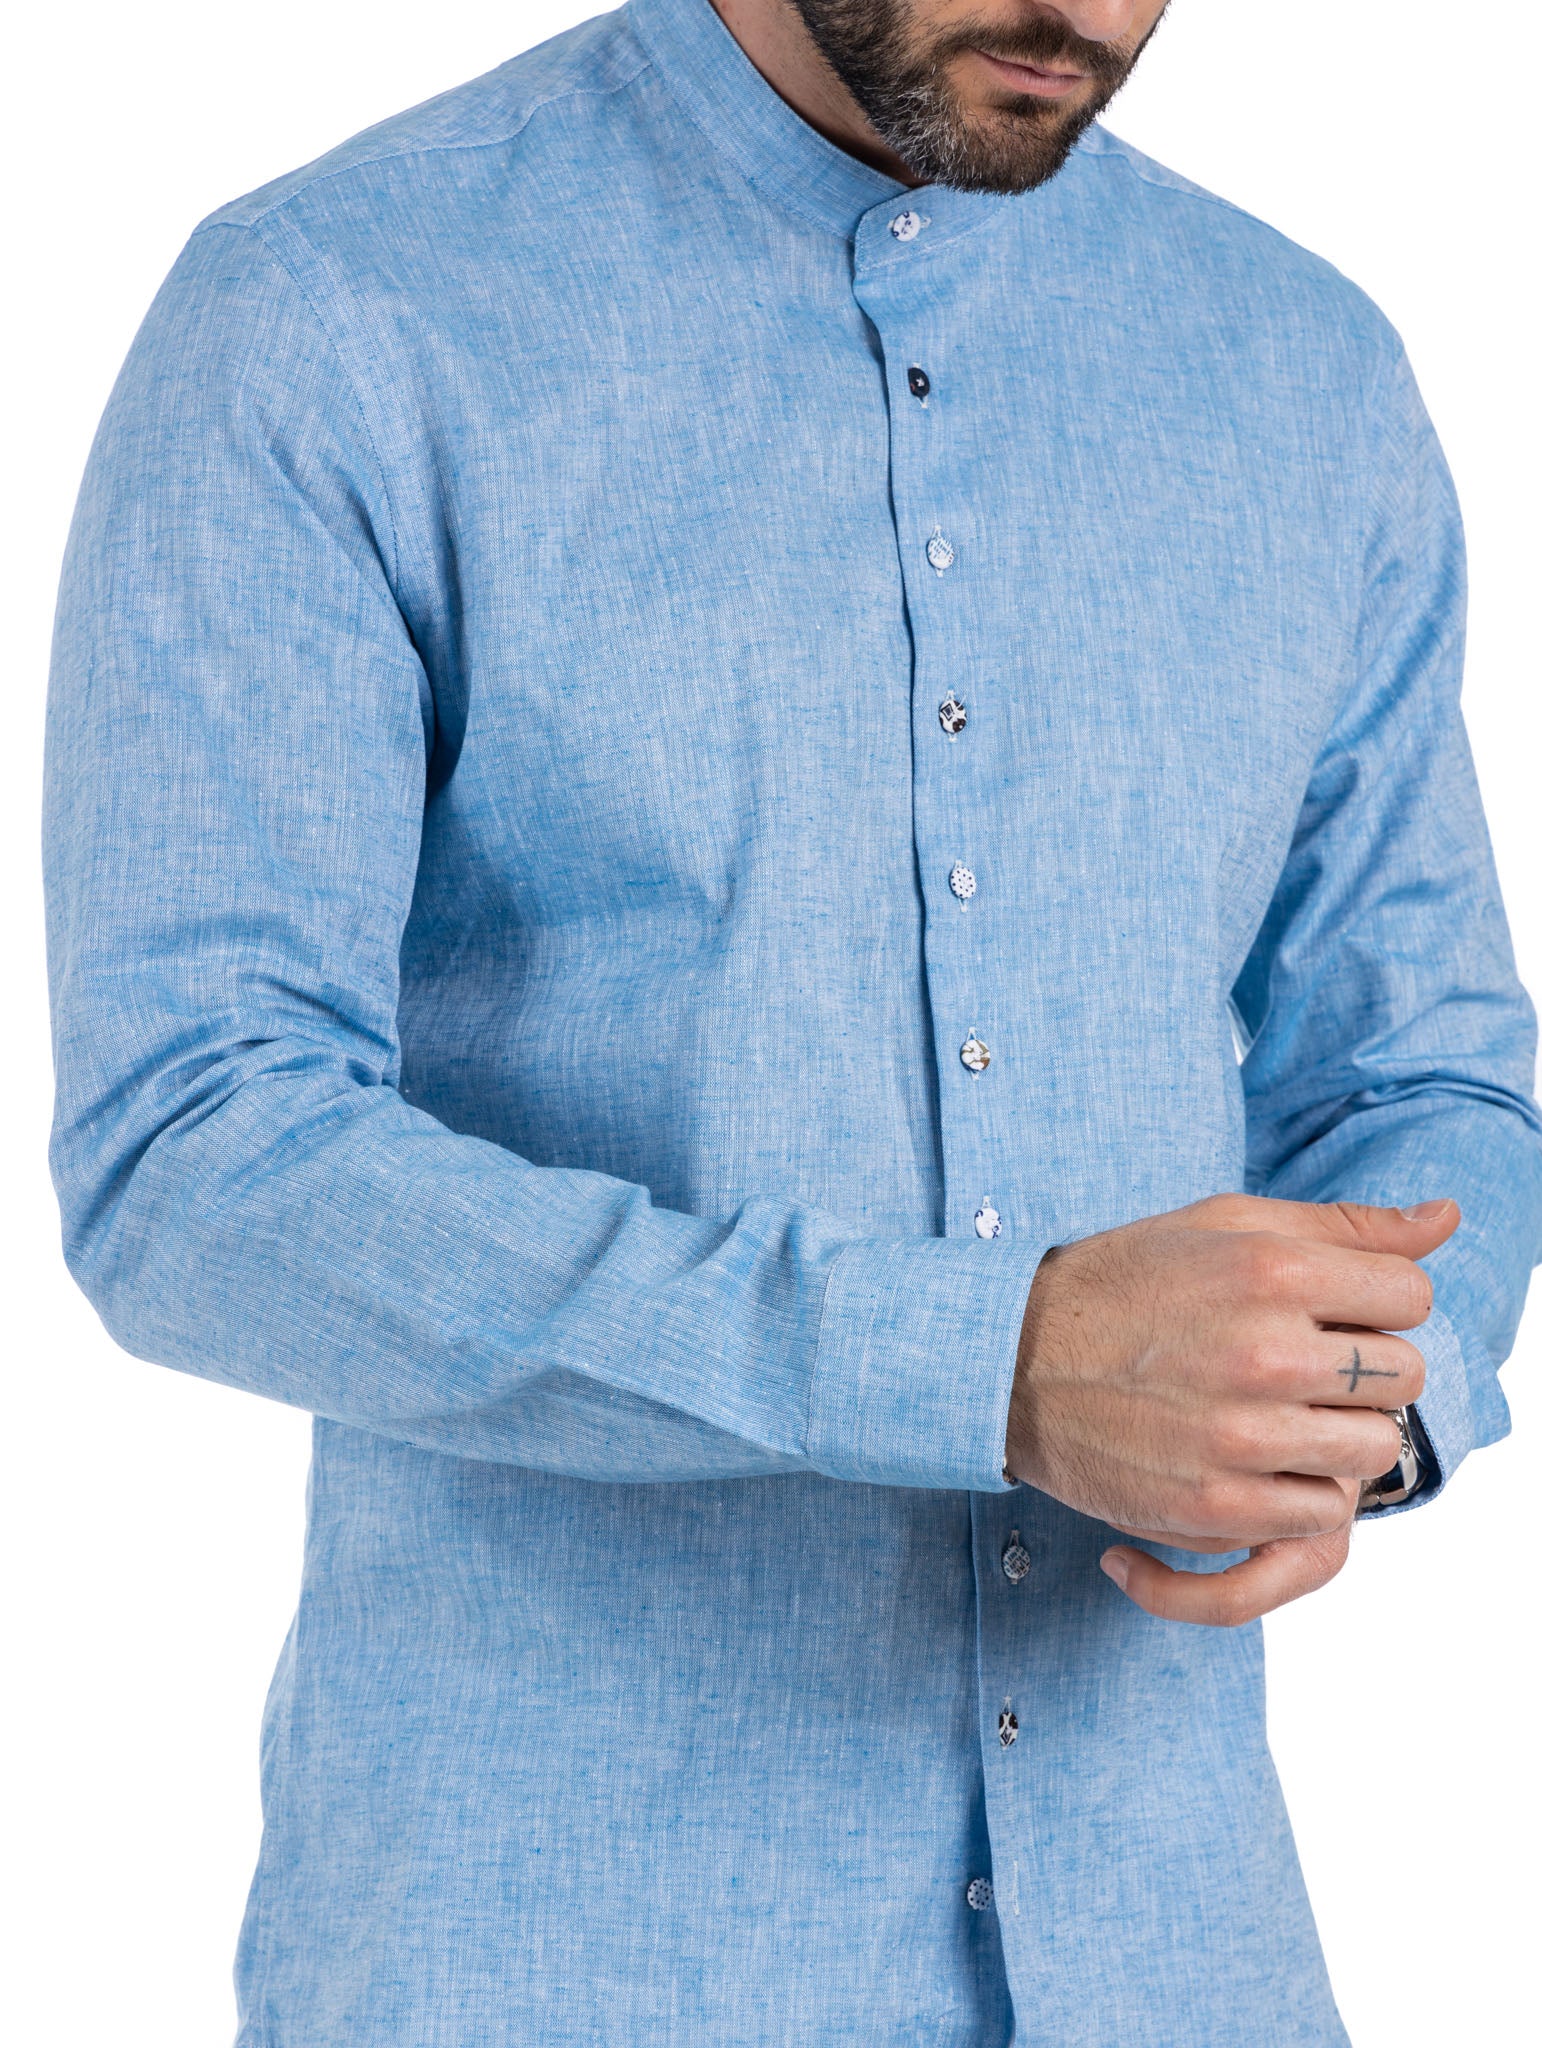 Positano - chemise coréenne en lin turquoise